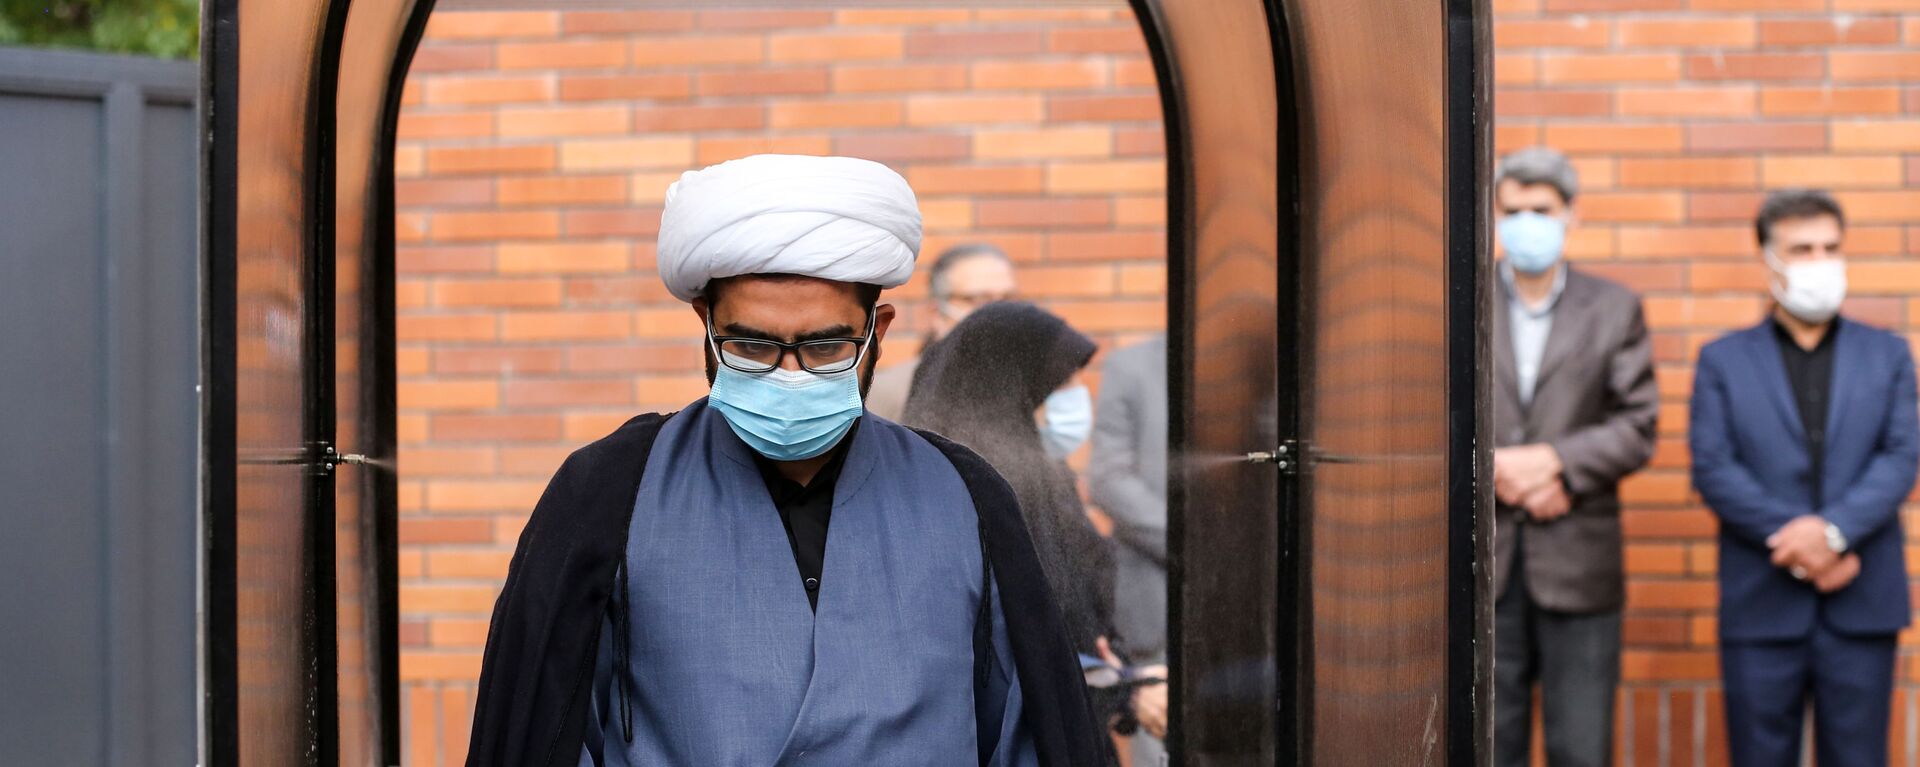 Иранский чиновник в маске во время прохождения дезинфекции в школе в Тегеране  - Sputnik Тоҷикистон, 1920, 11.07.2021